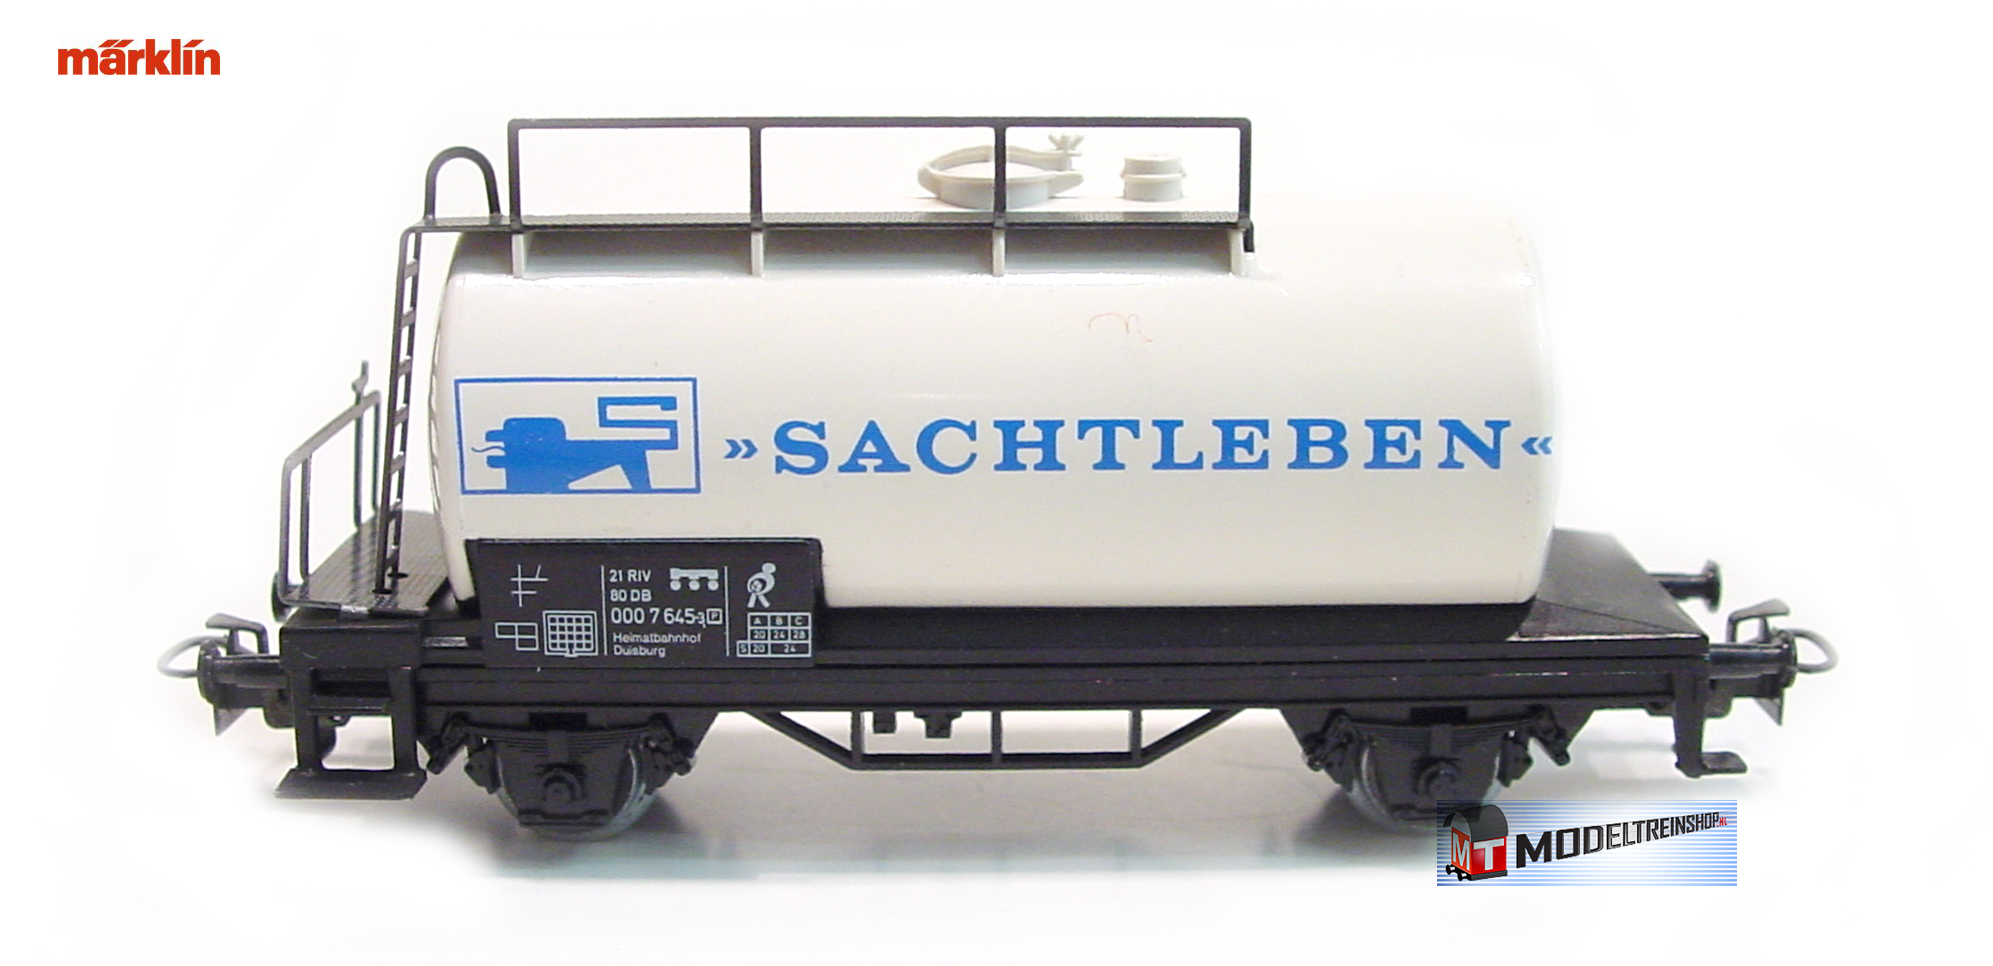 Marklin H0 4440 86706 Ketel Wagen Sachtleben - Modeltreinshop